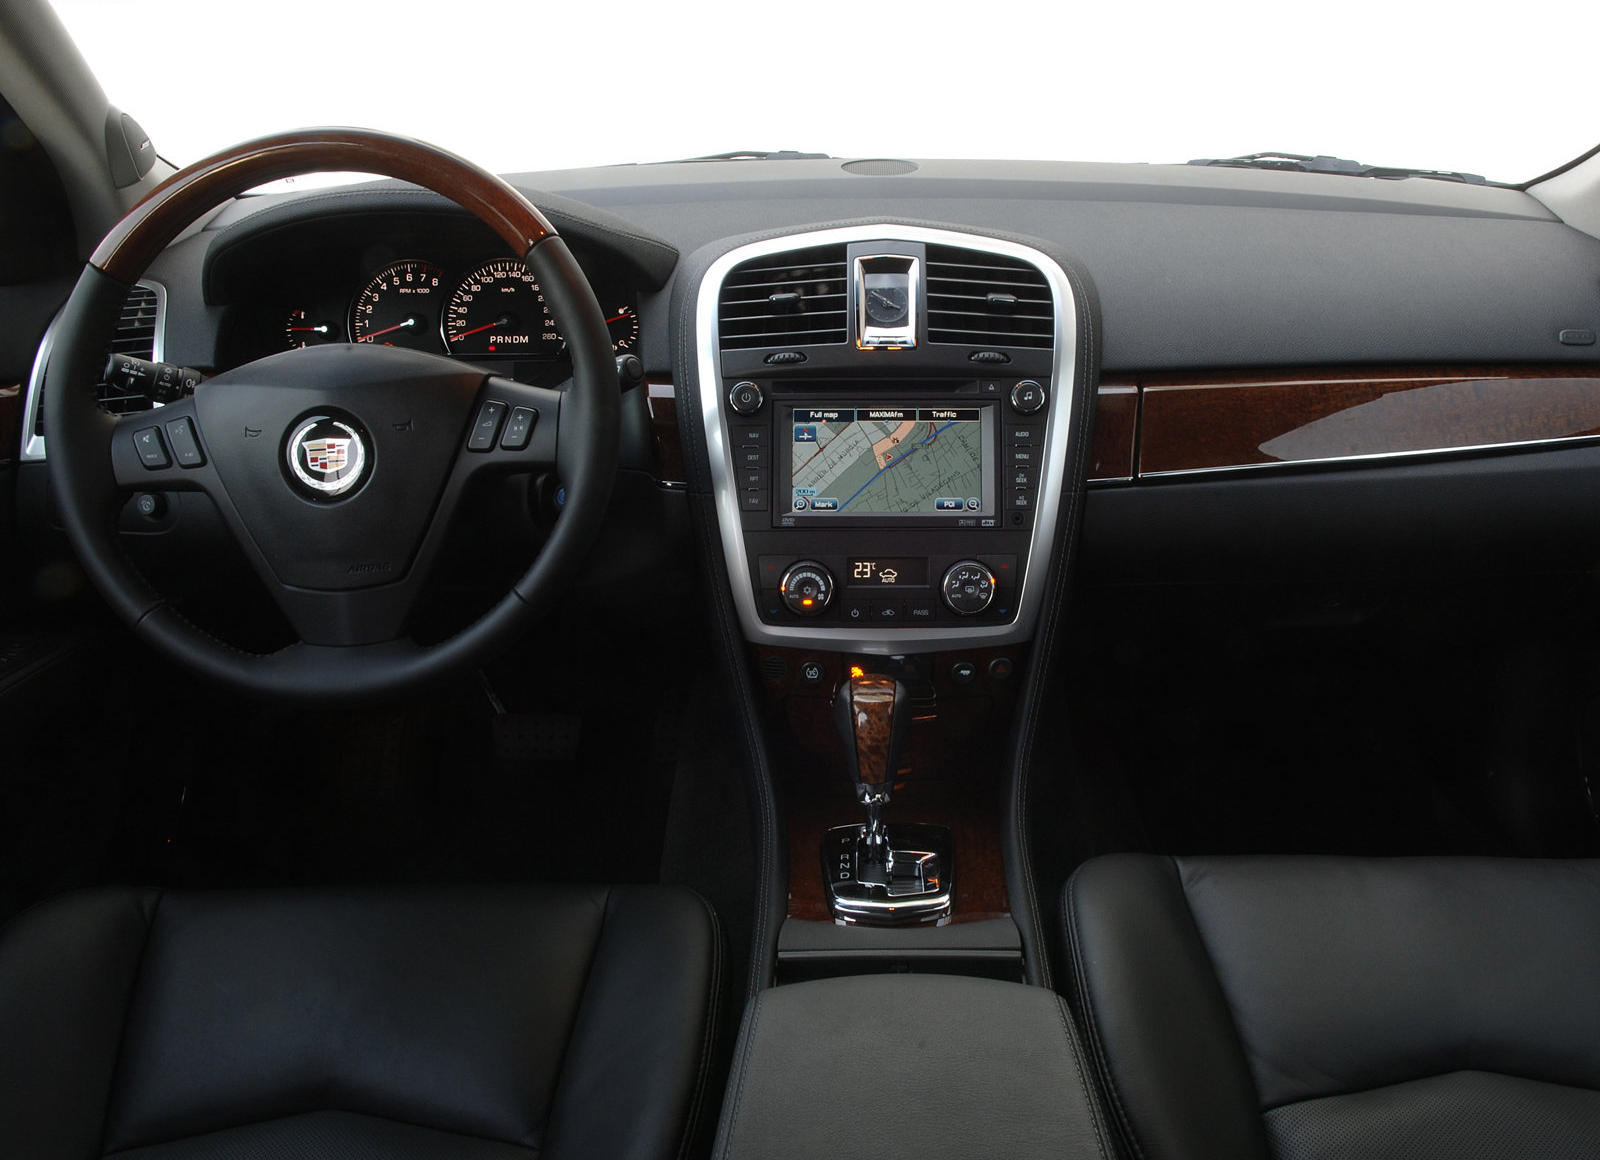 2009 Cadillac SRX Interior Photos | CarBuzz